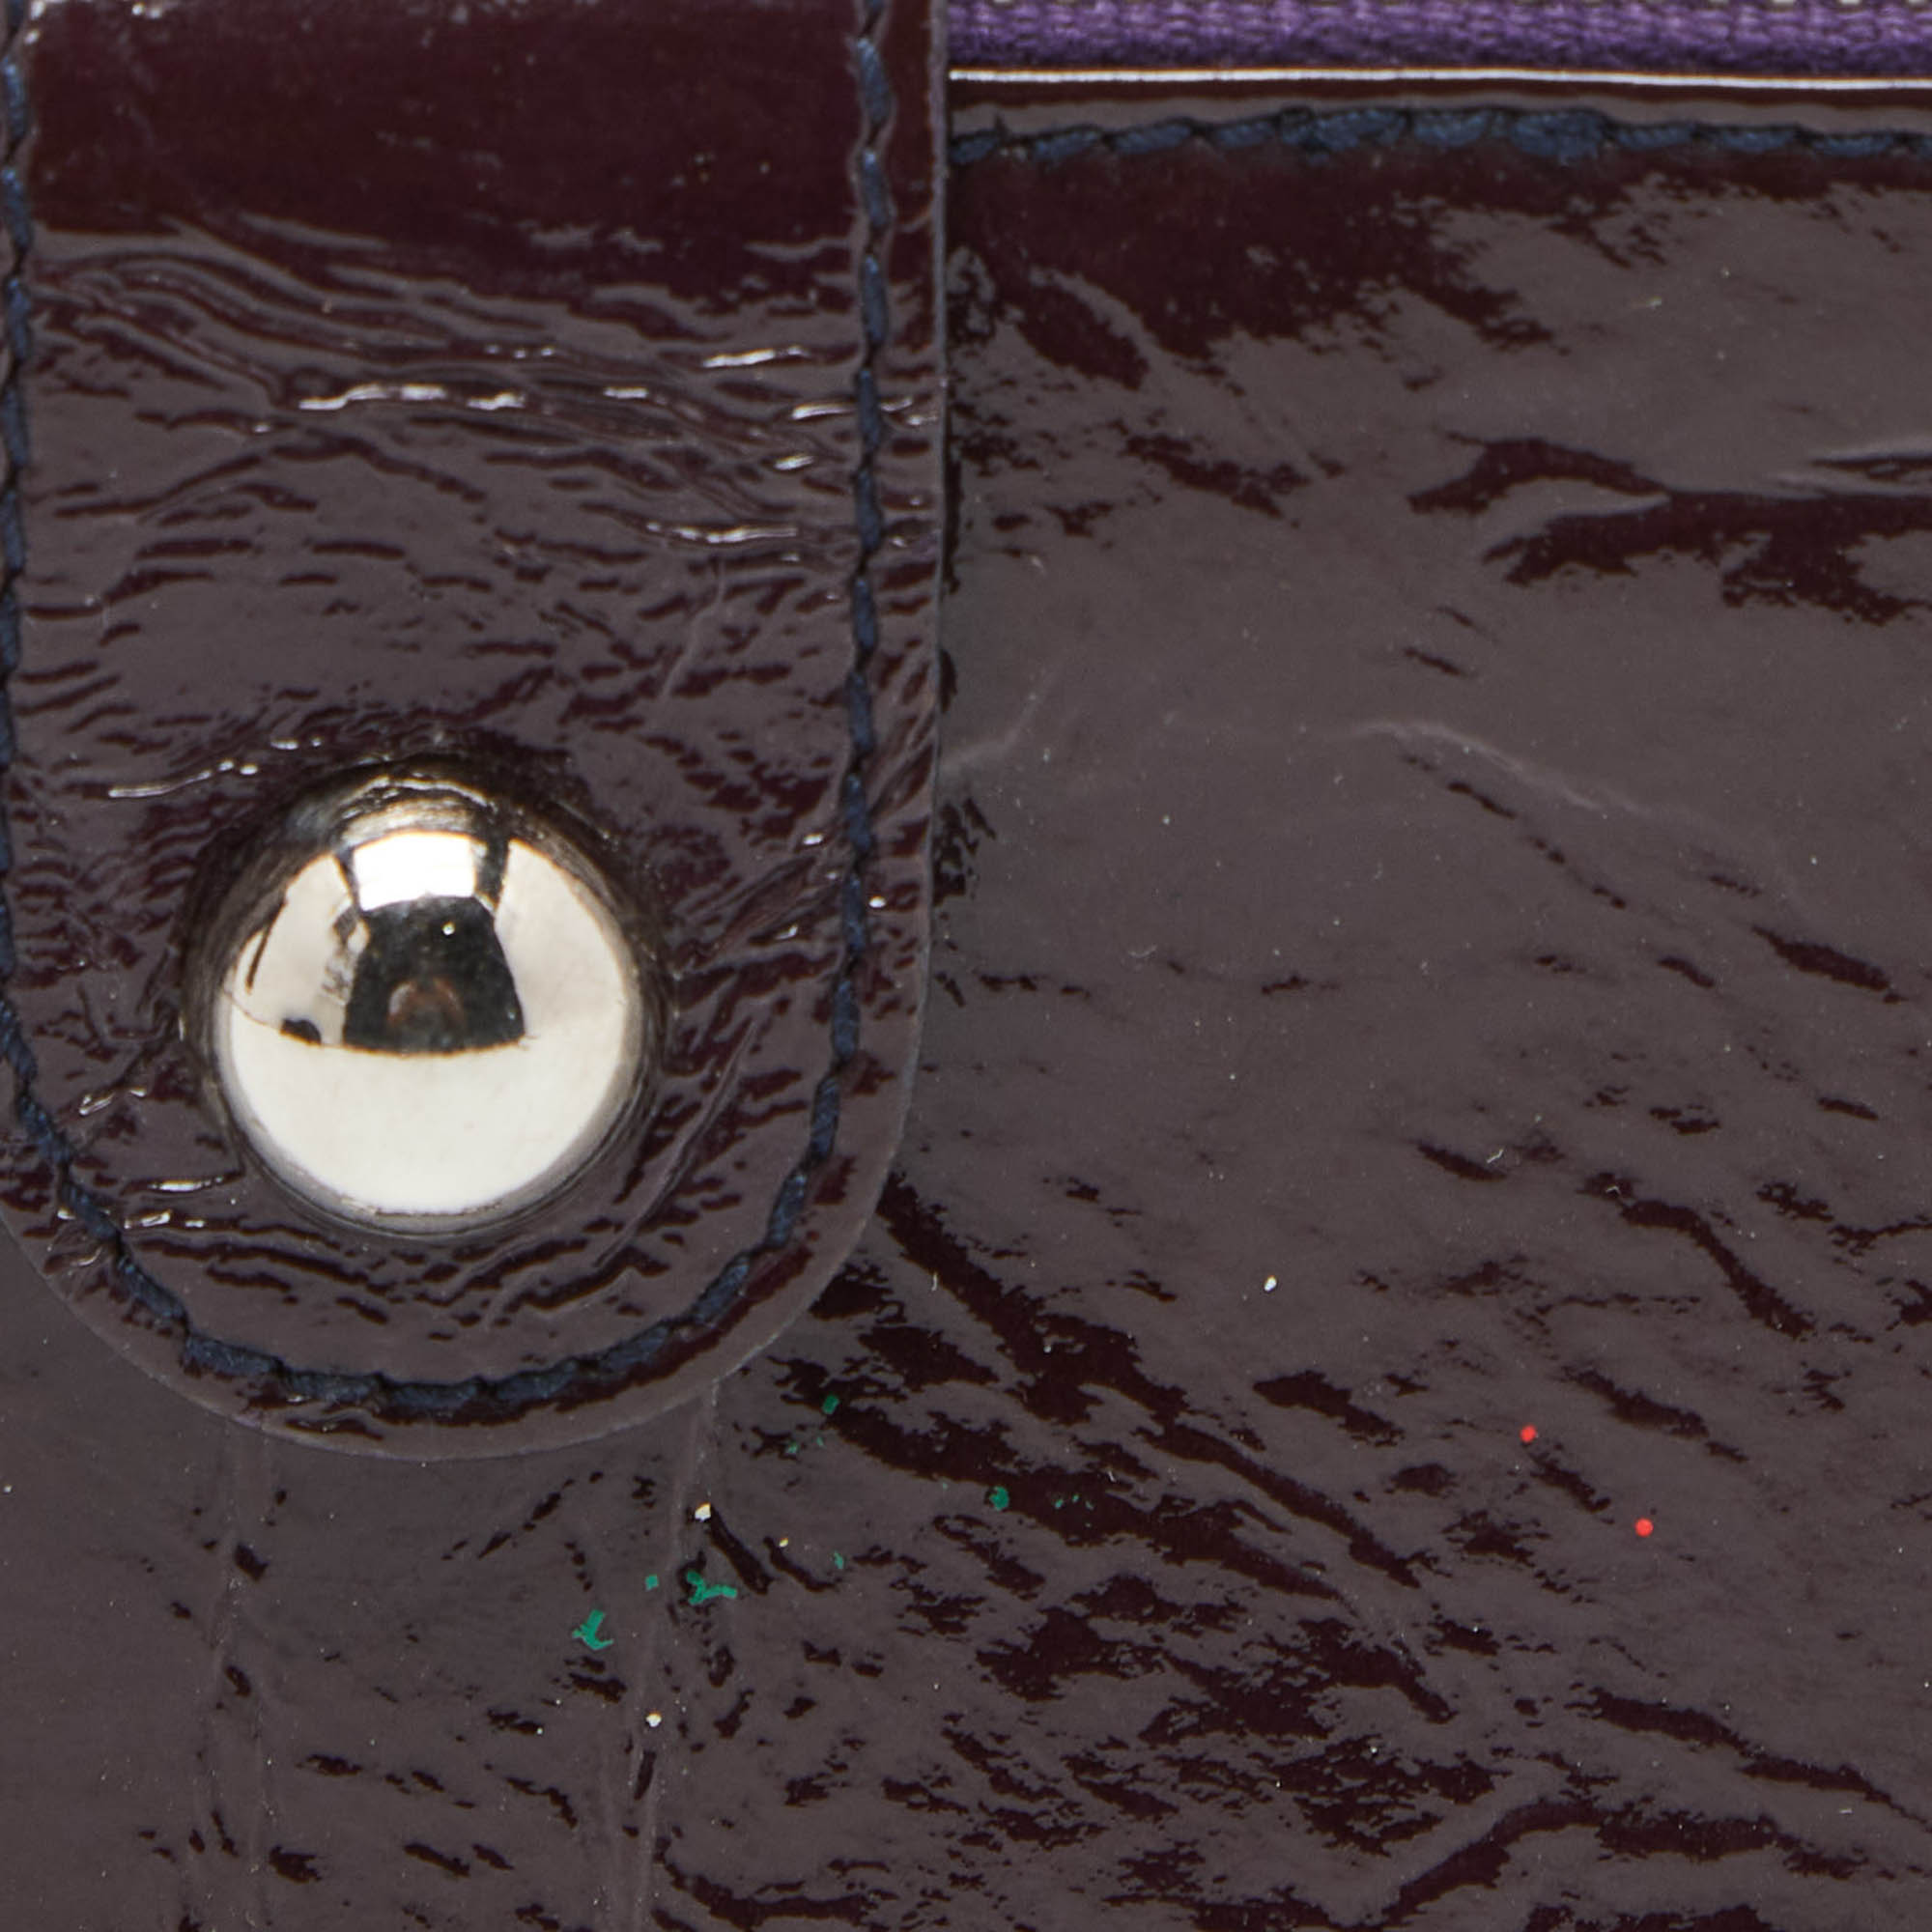 D&G Plum Patent Leather Double Zip Bifold Flap Wallet